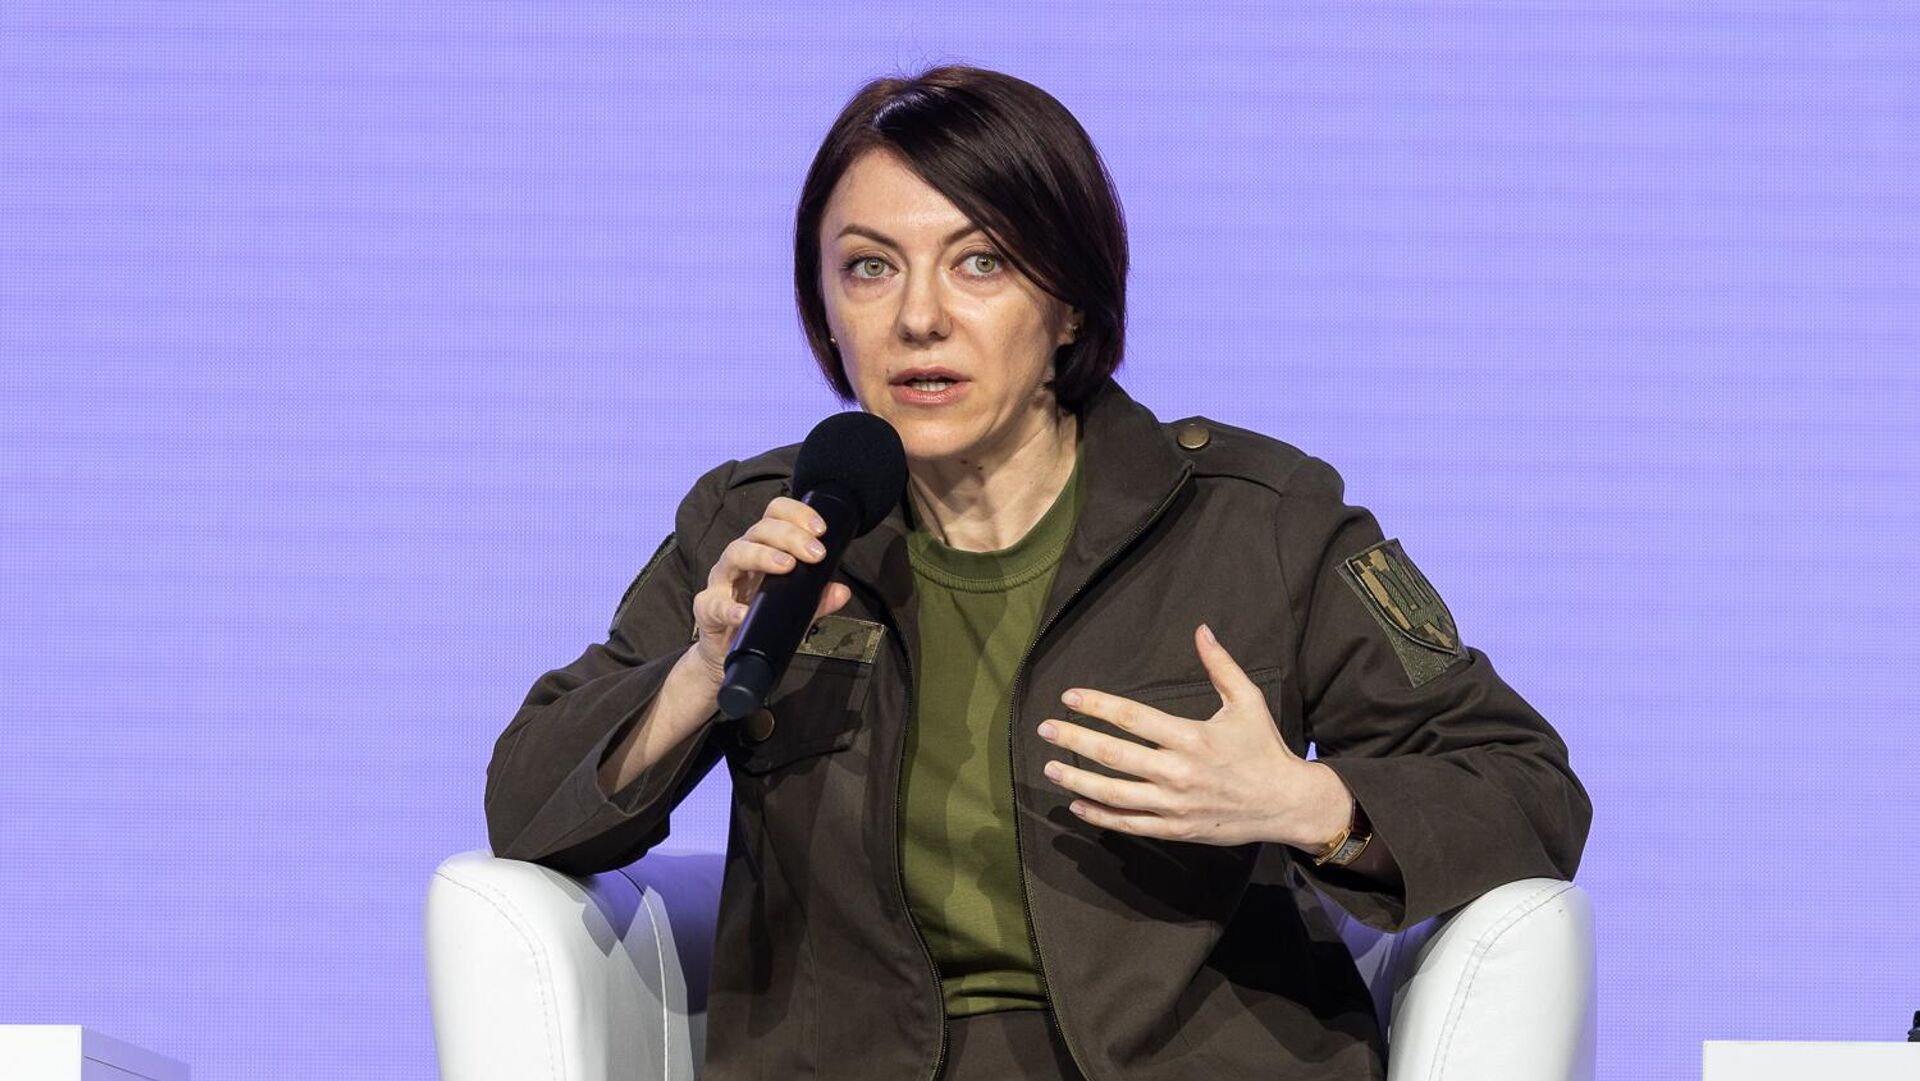 Замминистра обороны Украины Анна маляр